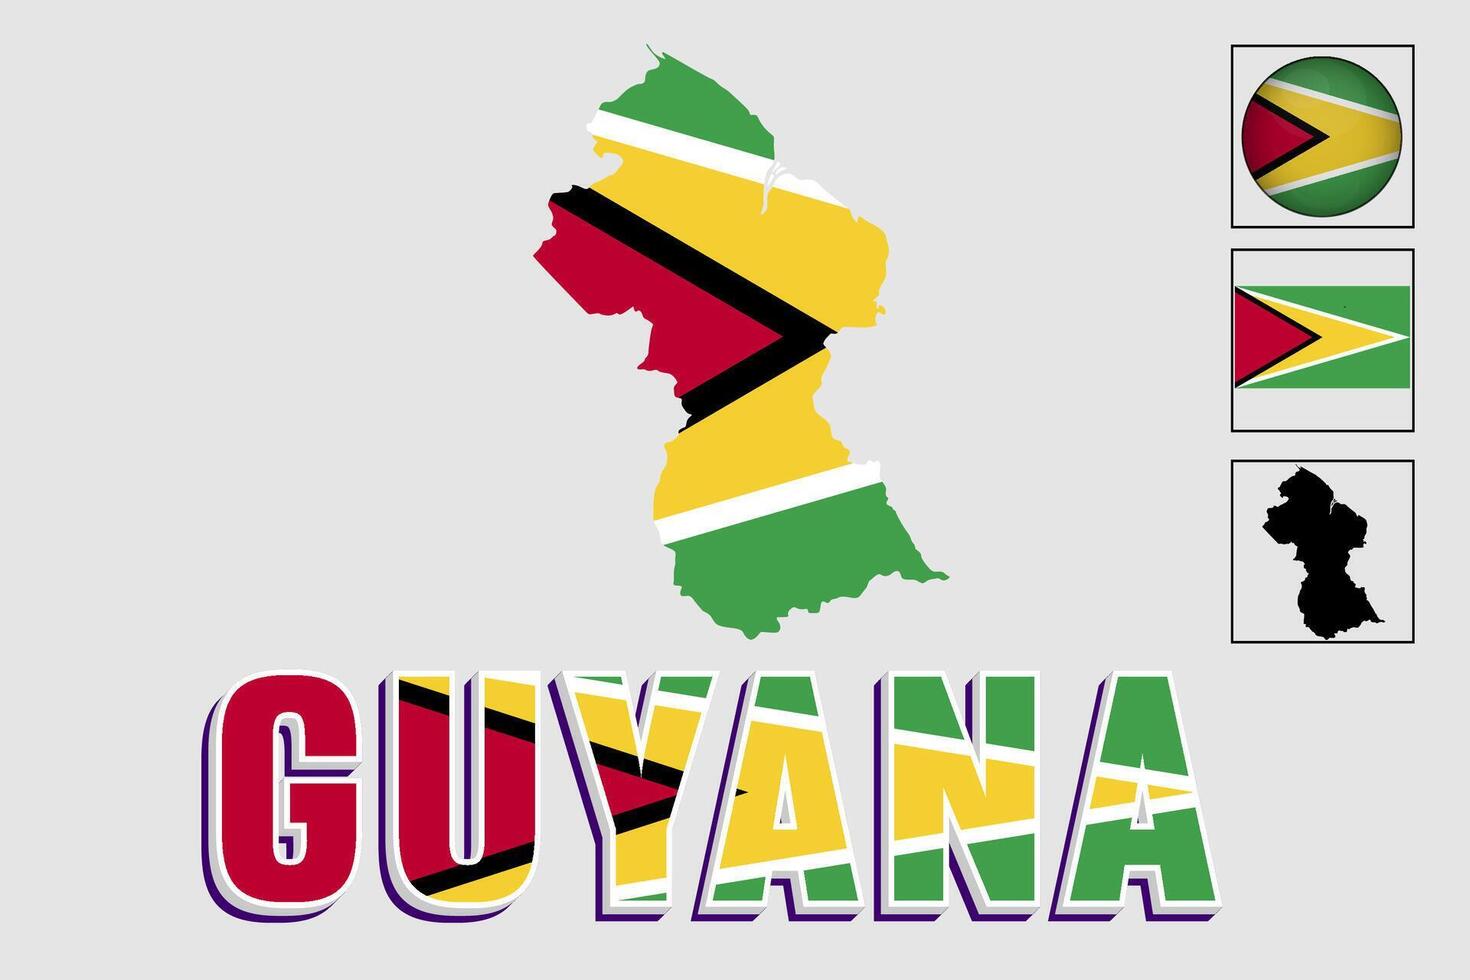 Guyana kaart en vlag in vector illustratie